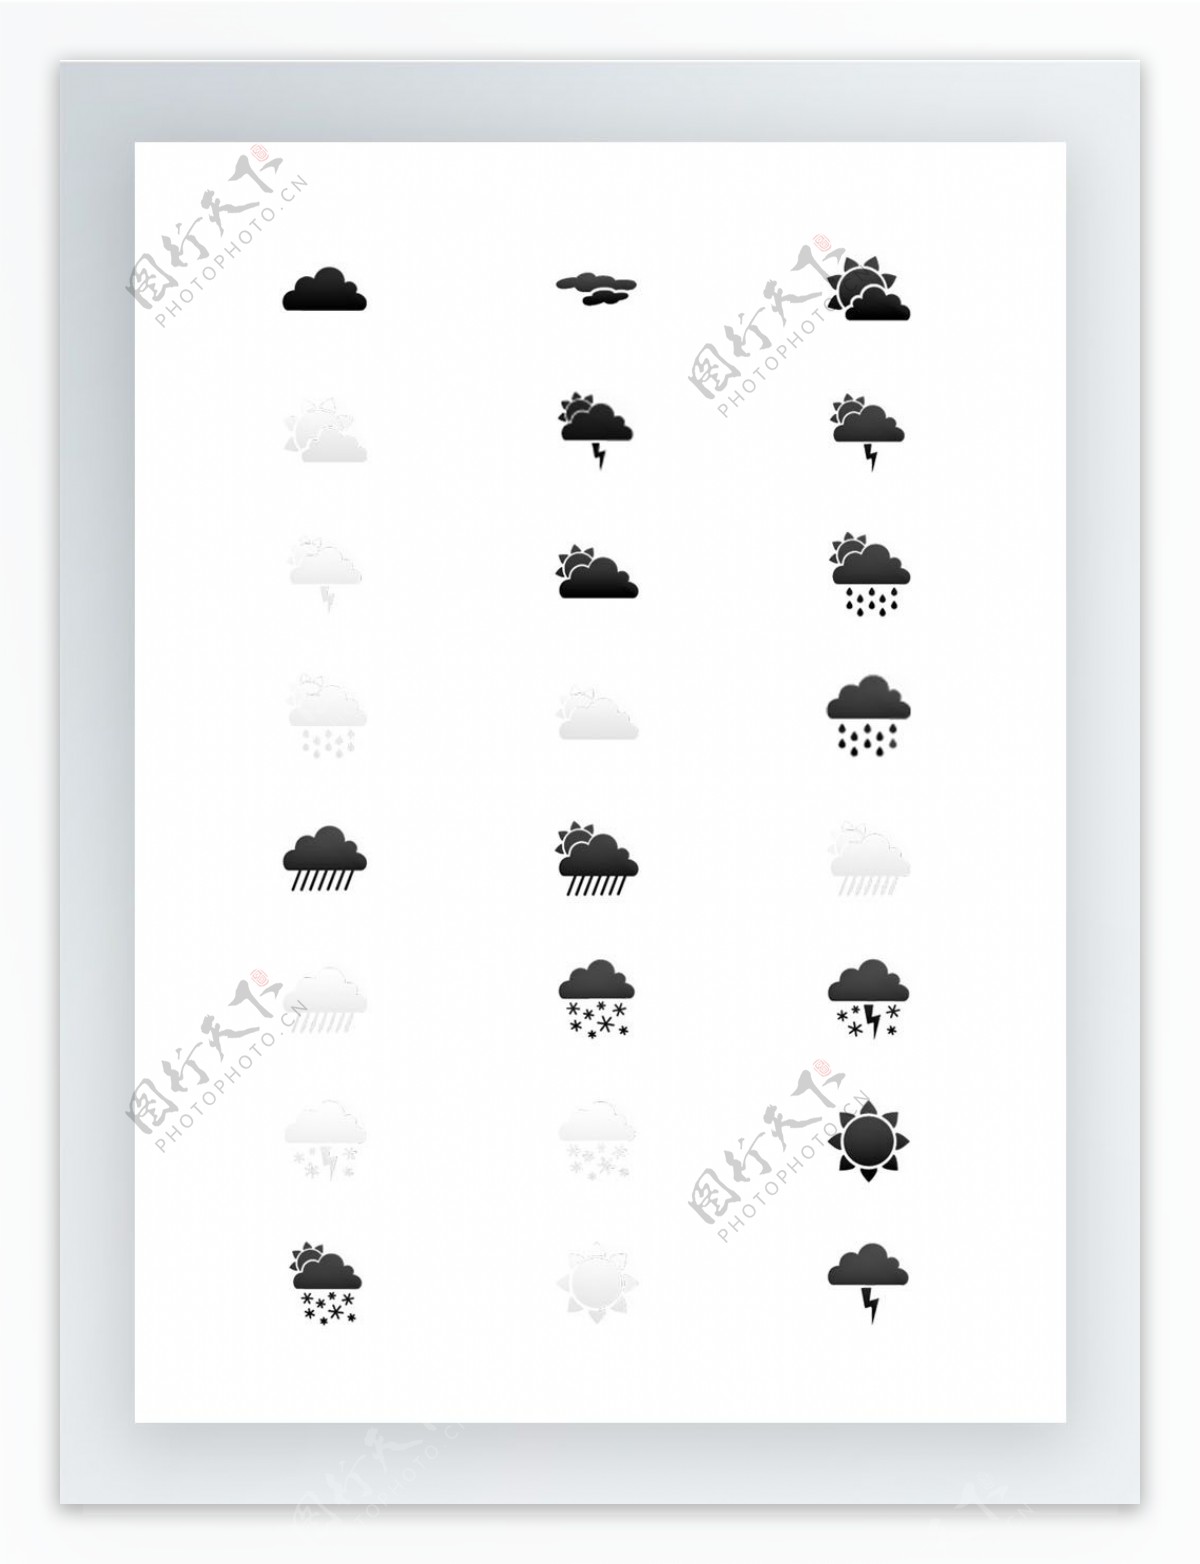 下雨天气图标集